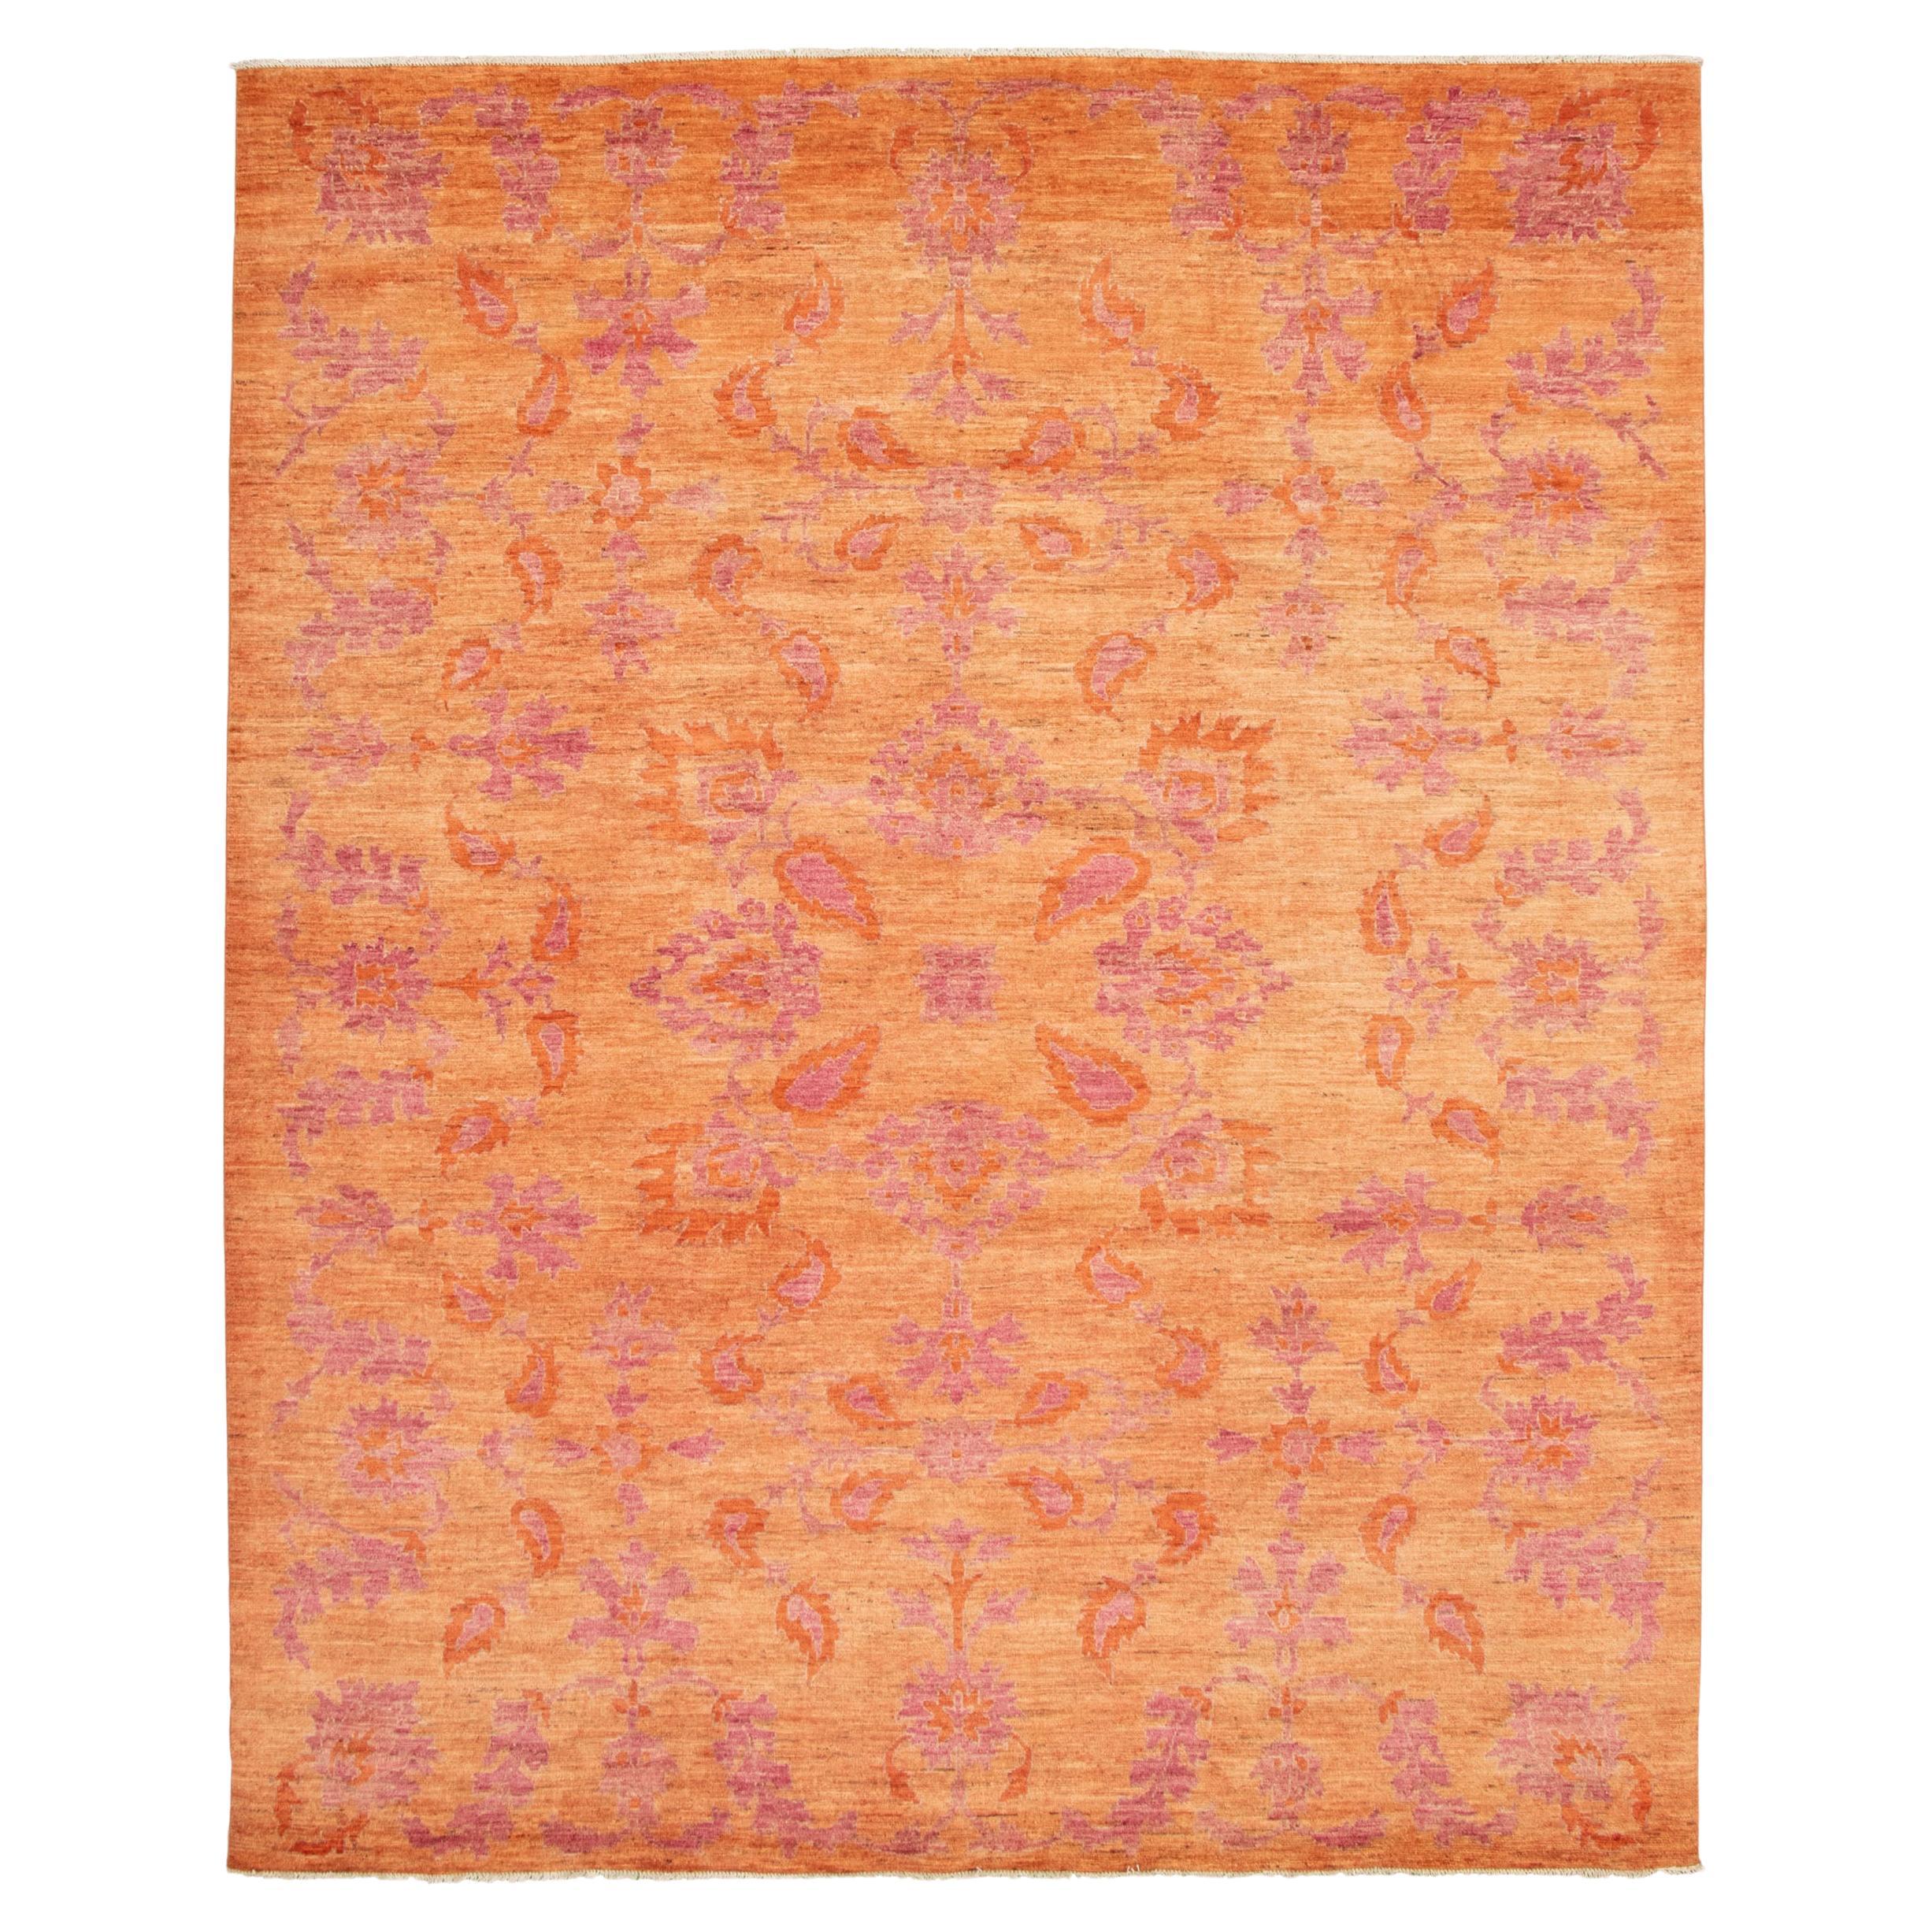 Feiner persischer Oushak-Teppich, Rosa und Orange, Übergangs-Blumendesign, 9' x 12'